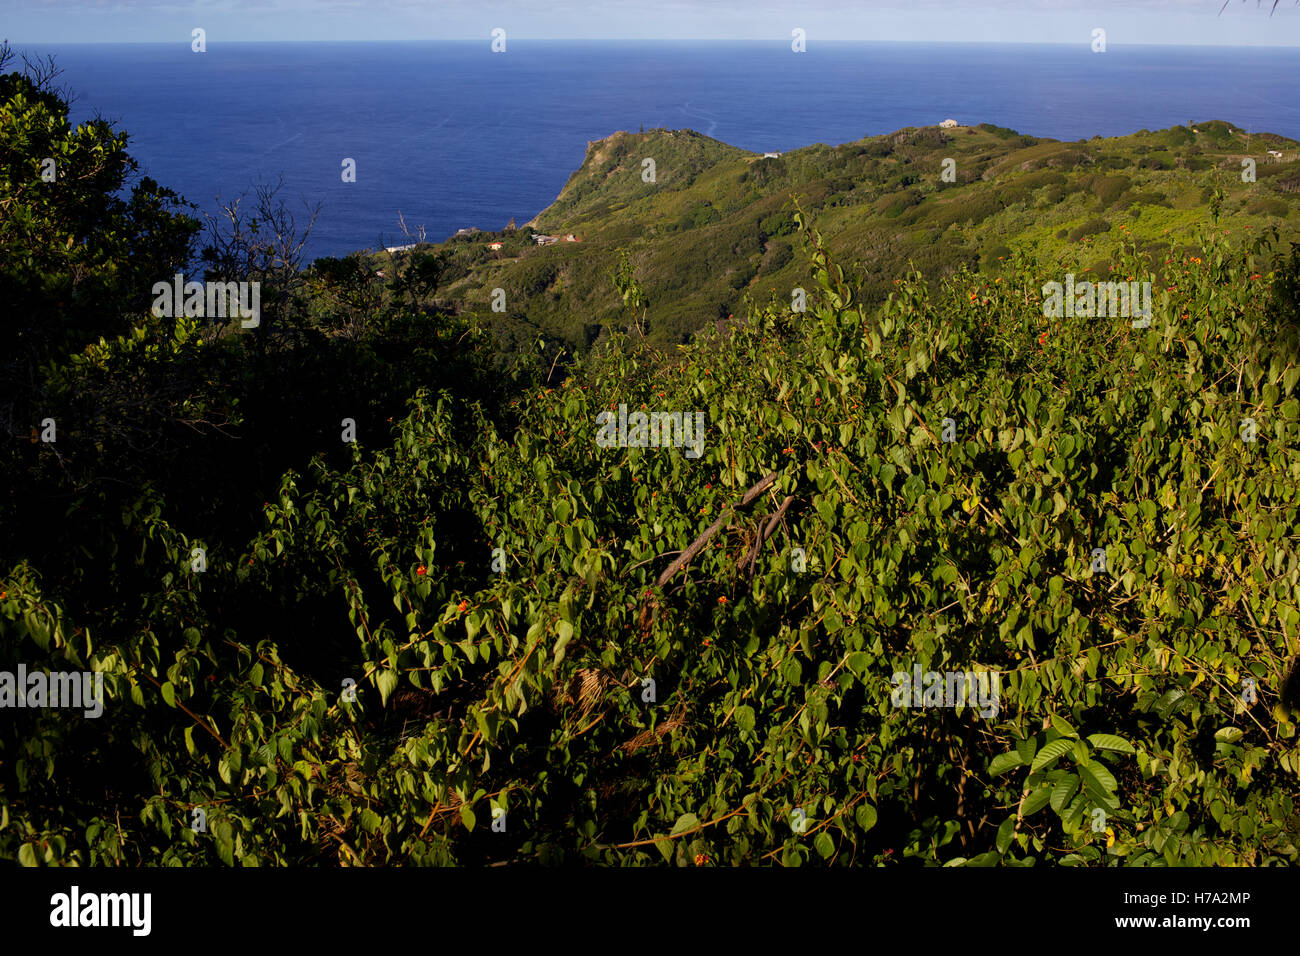 Pitcairn, Söhne von Meuterern! -04/06/2012 - Pitcairn / Pitcairn - Sightseeing auf das Tal und das kleine Dorf von Adamstown, Pitcairninseln - Olivier Goujon / Le Pictorium Stockfoto